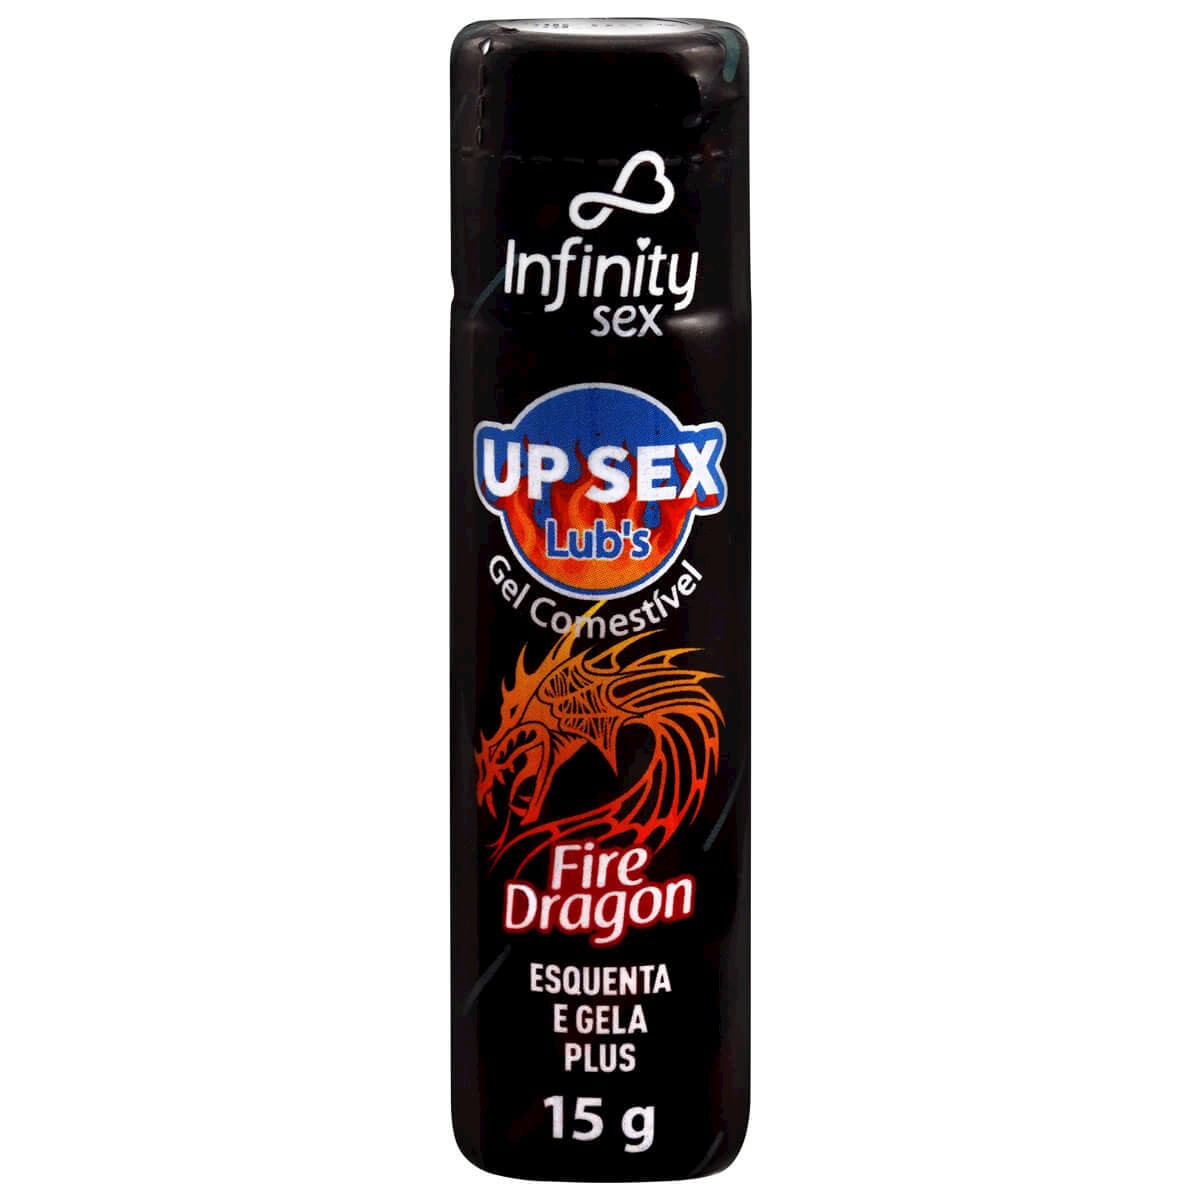 Up Sex Lub's Gel Comestível Fire Dragon Esquenta e Gela Plus 15g Infinity Sex